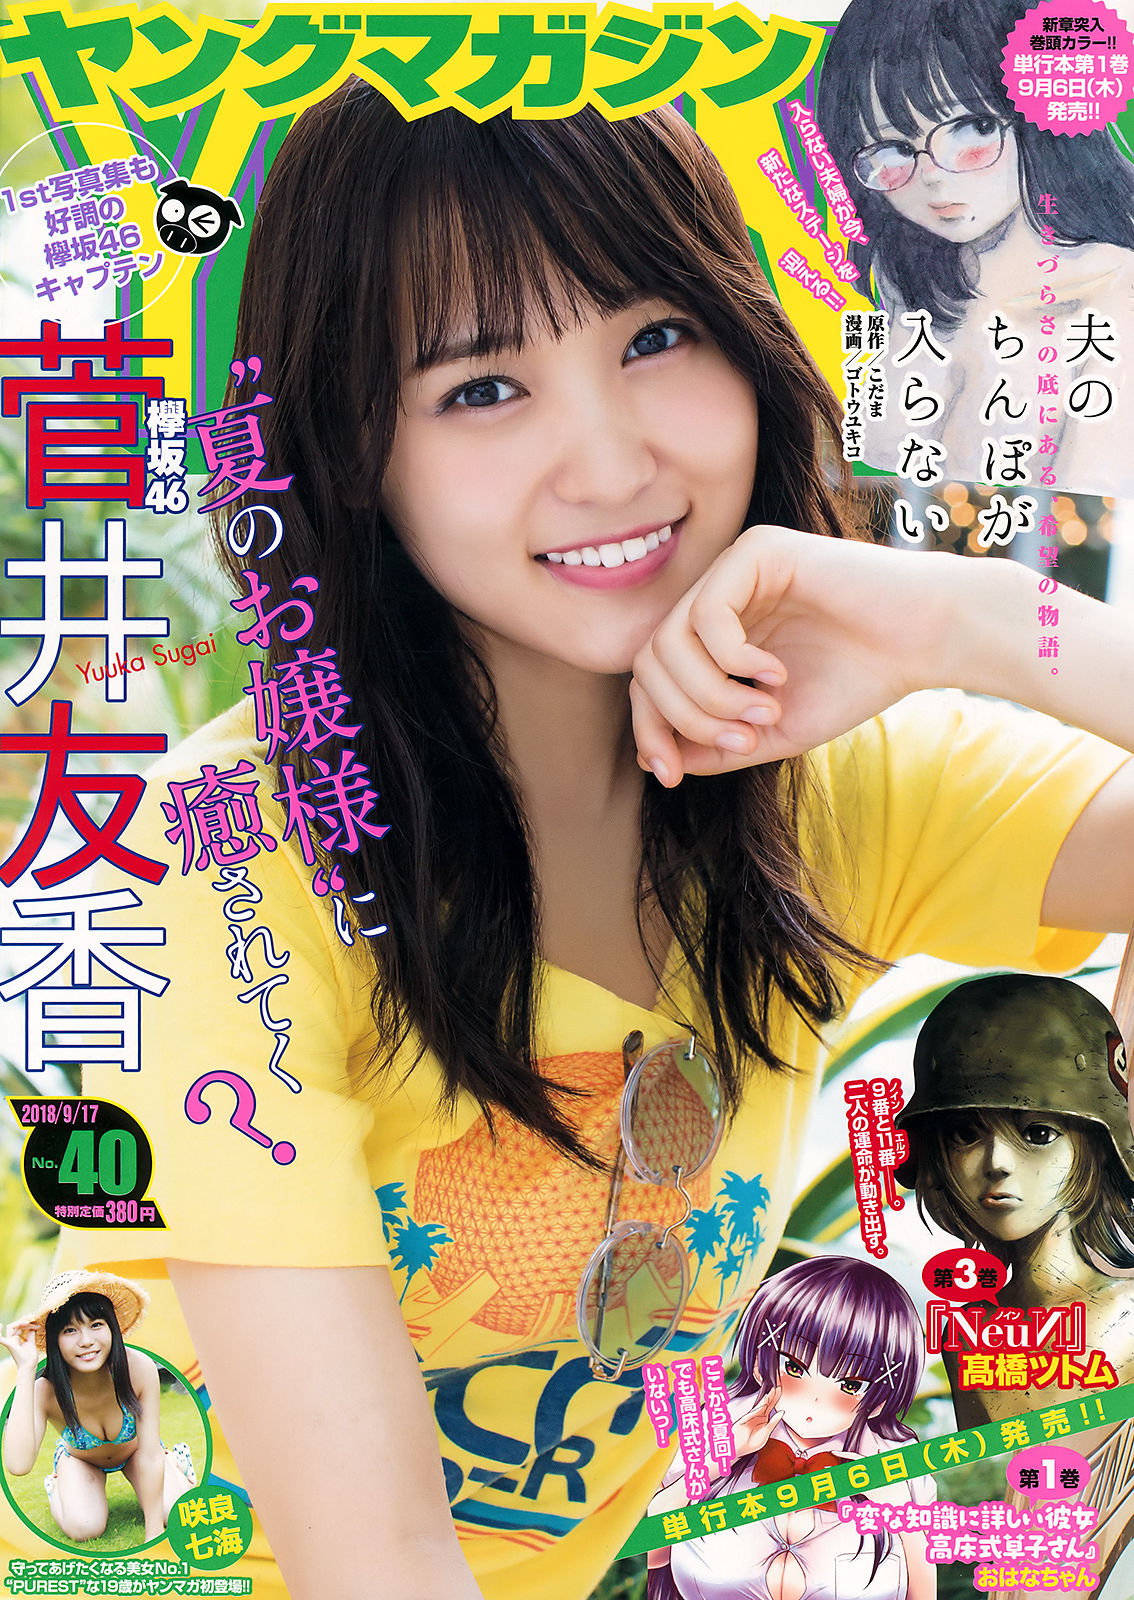 Young magazine. Сугай Юка. Юка Сугаи. Uka Magazine China.